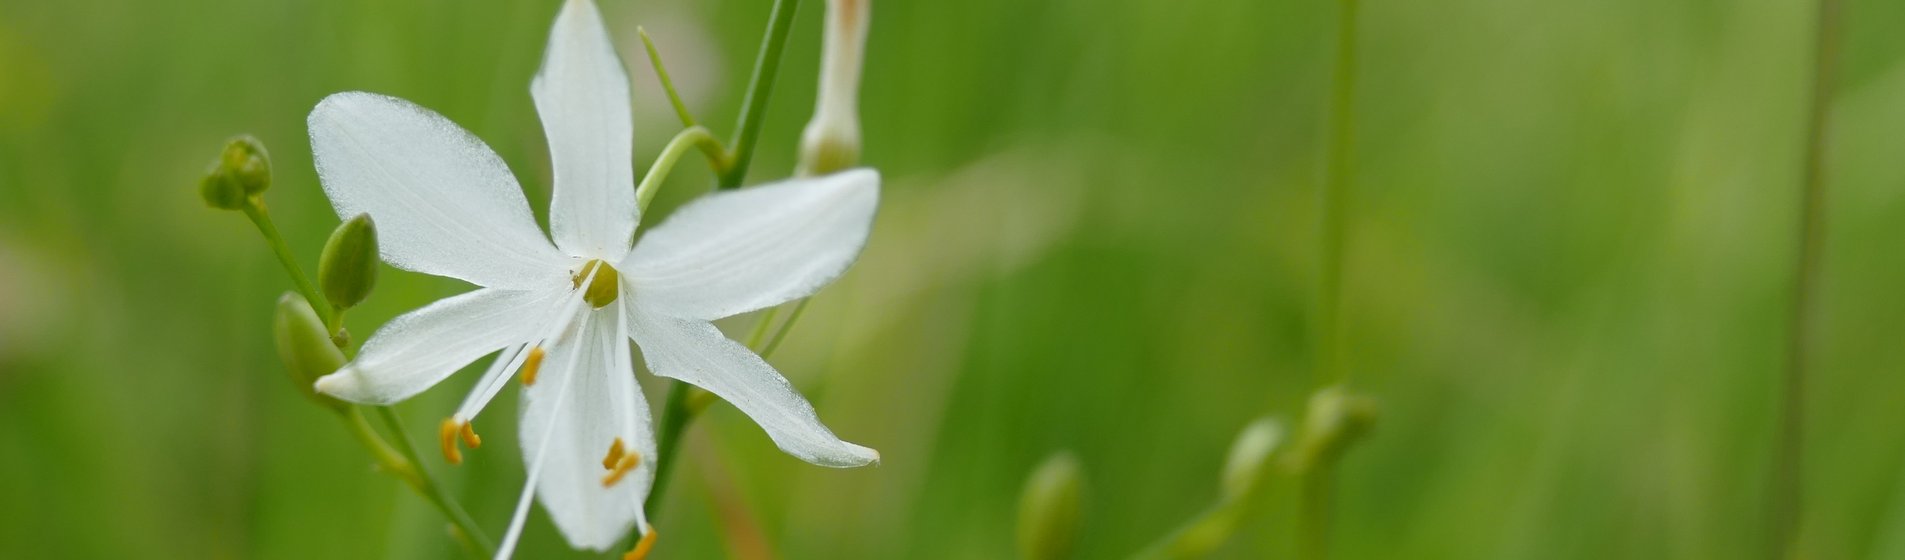 Detailaufnahme einer weißen Graslilien-Blüte.